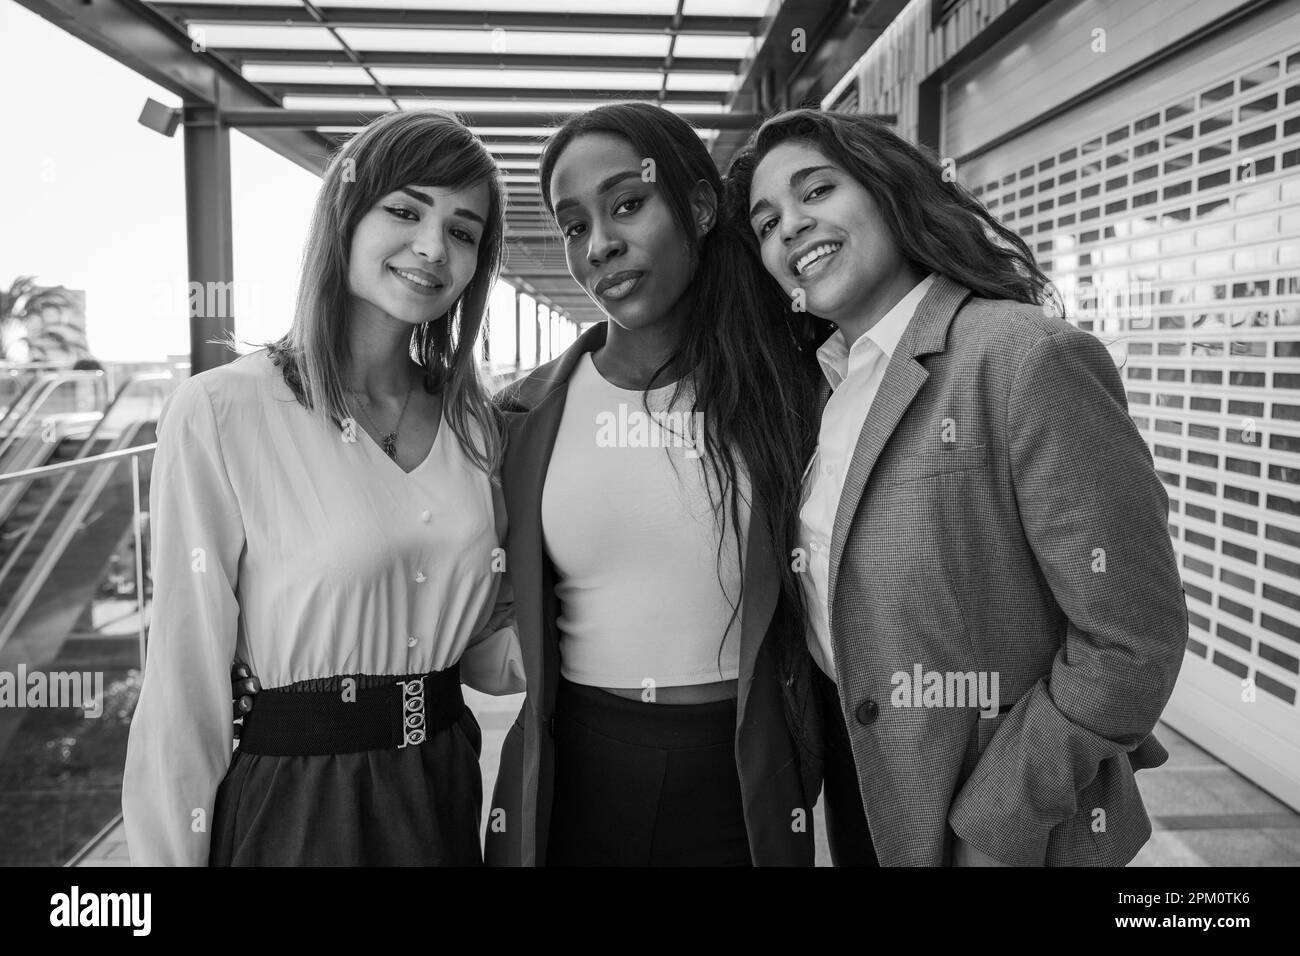 Trois femmes d'affaires souriant ensemble, collègues au travail, photo en noir et blanc. Banque D'Images